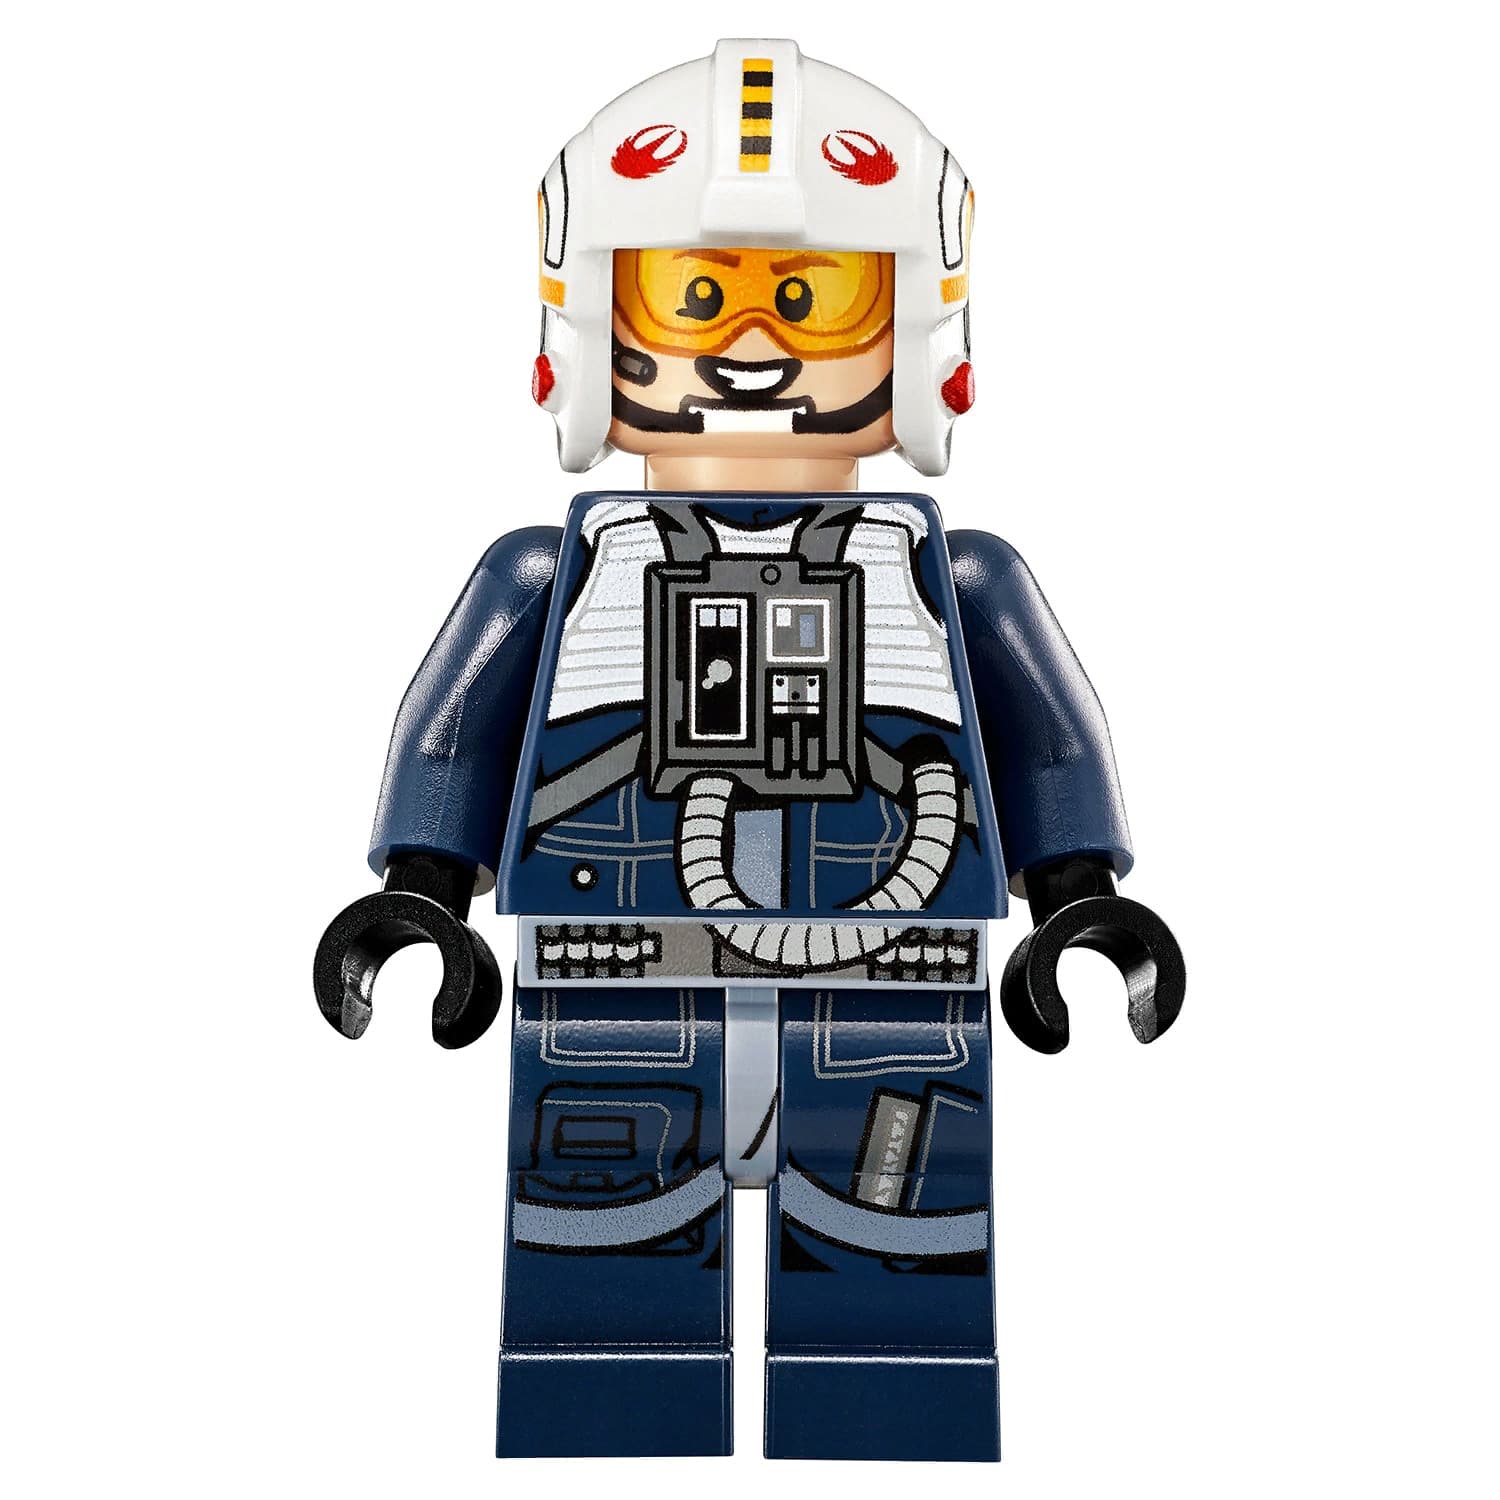 Конструктор LEGO Star Wars Микроистребитель типа Y 75162